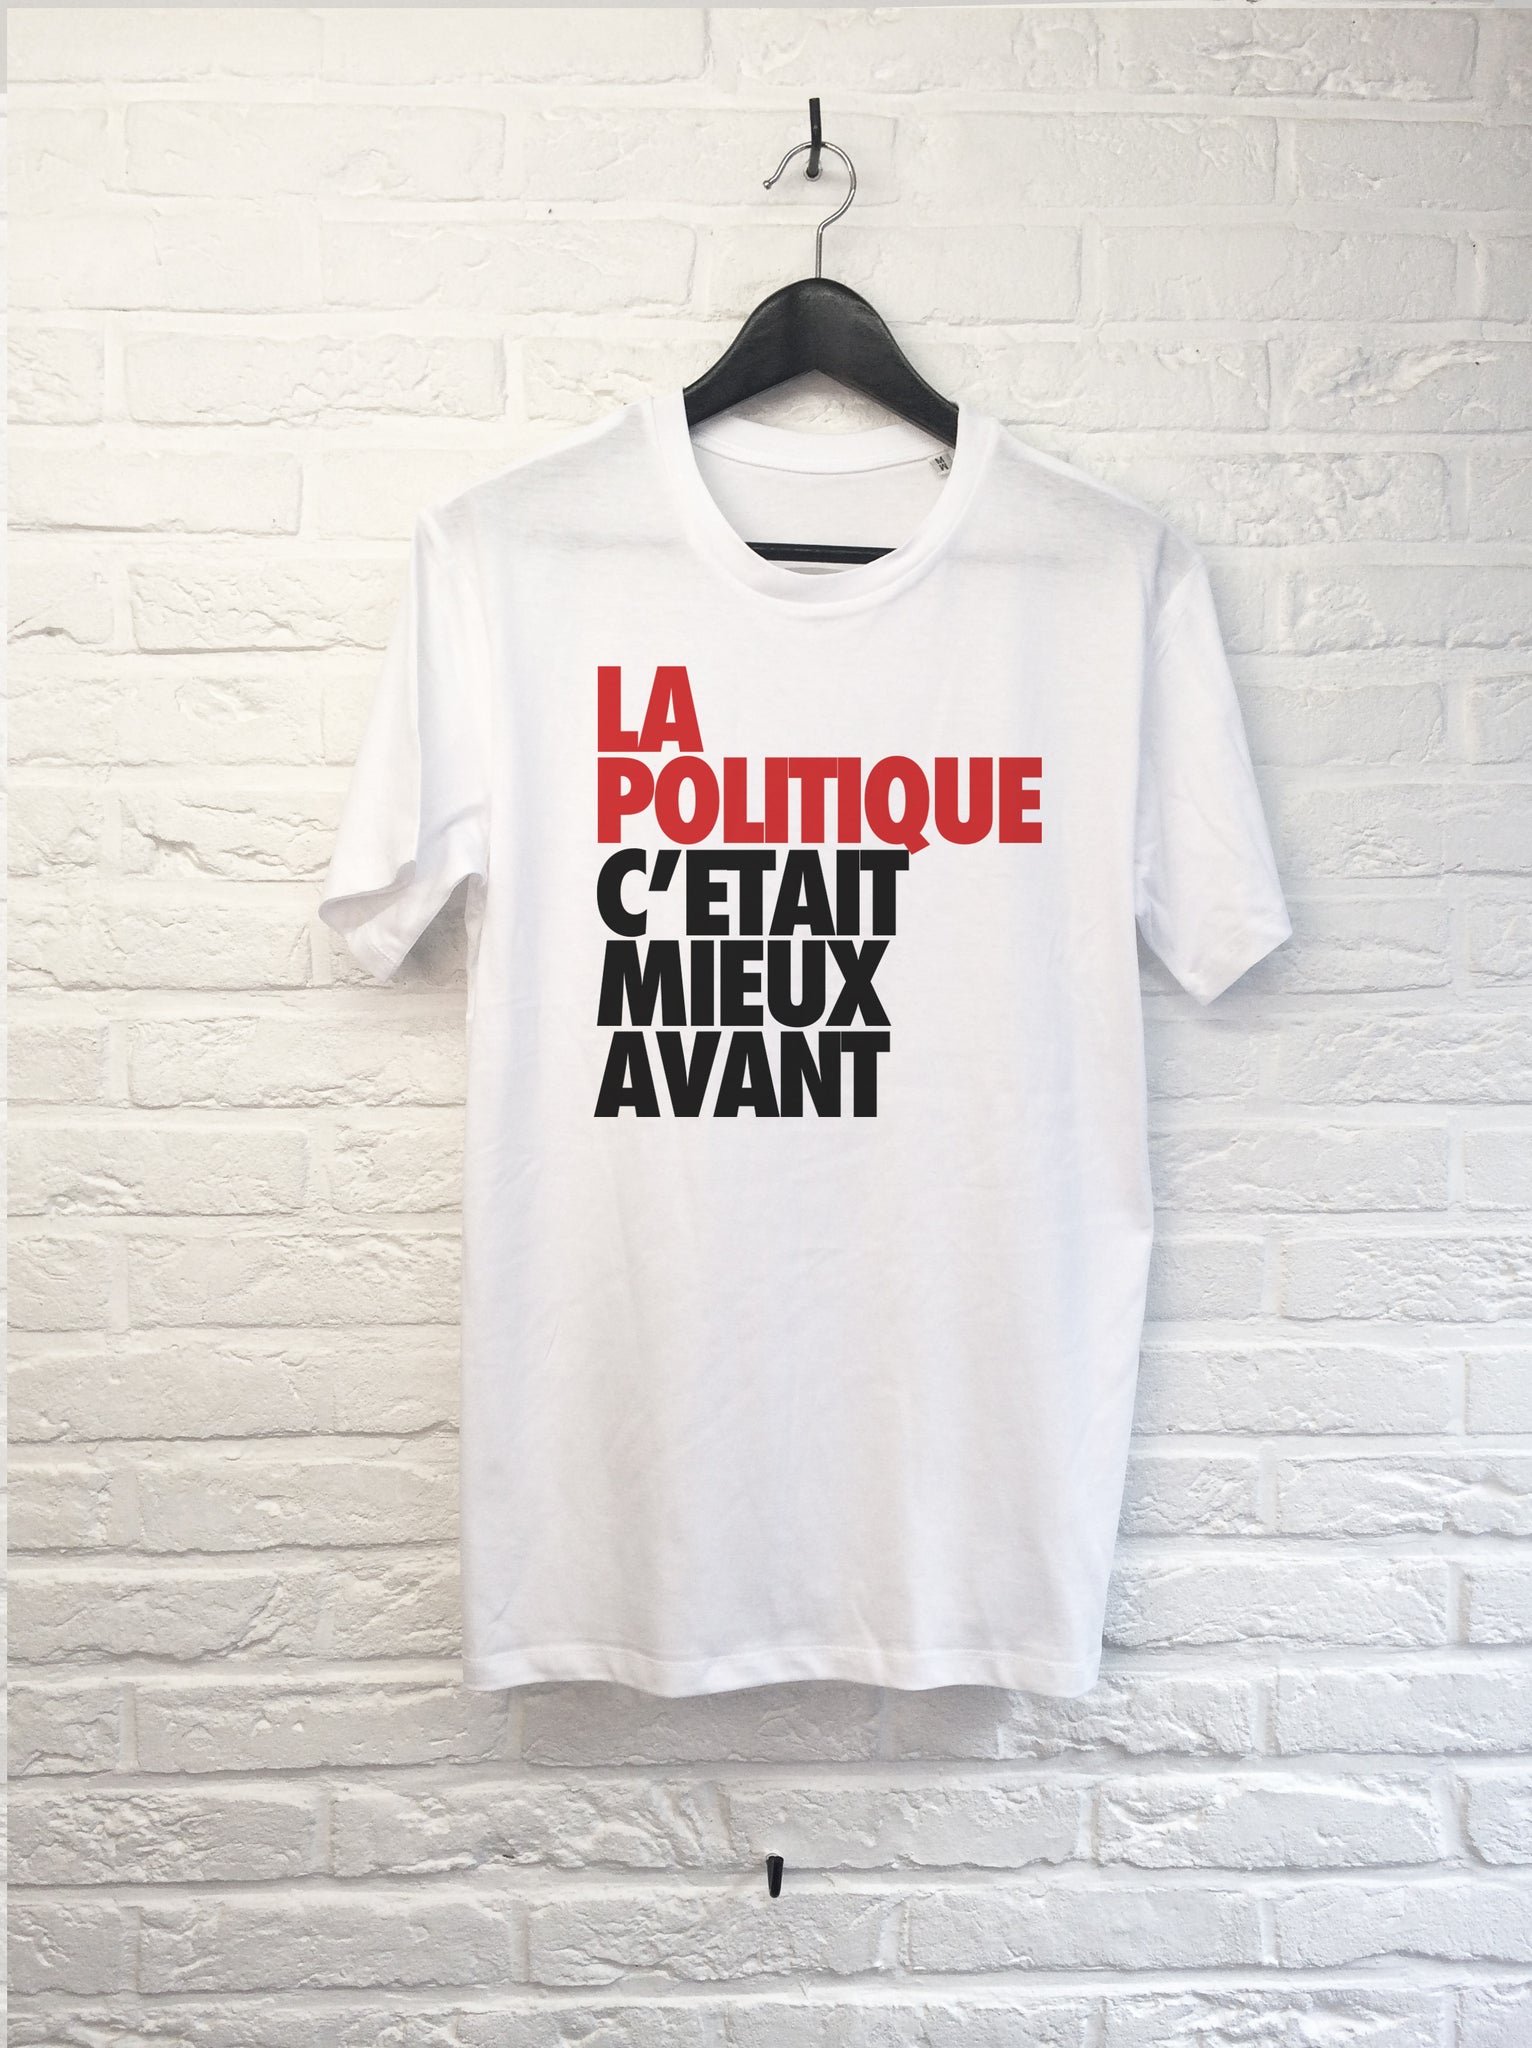 La politique c'était mieux avant-T shirt-Atelier Amelot